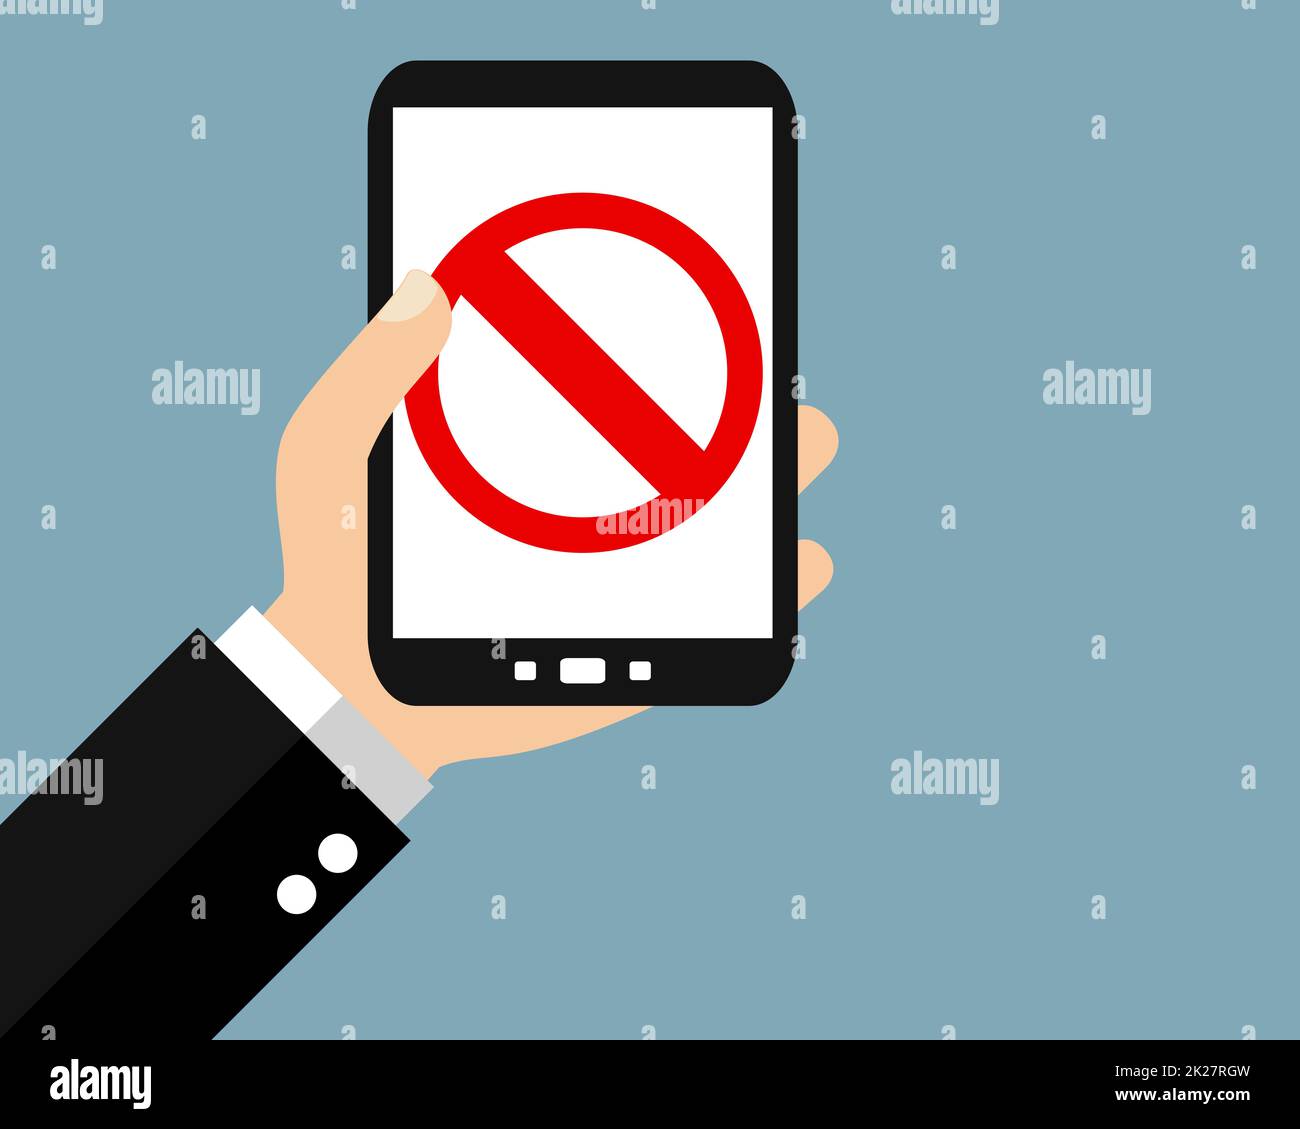 Blockierte oder illegale Inhalte auf Smartphone – Flachdesign-Banner Stockfoto